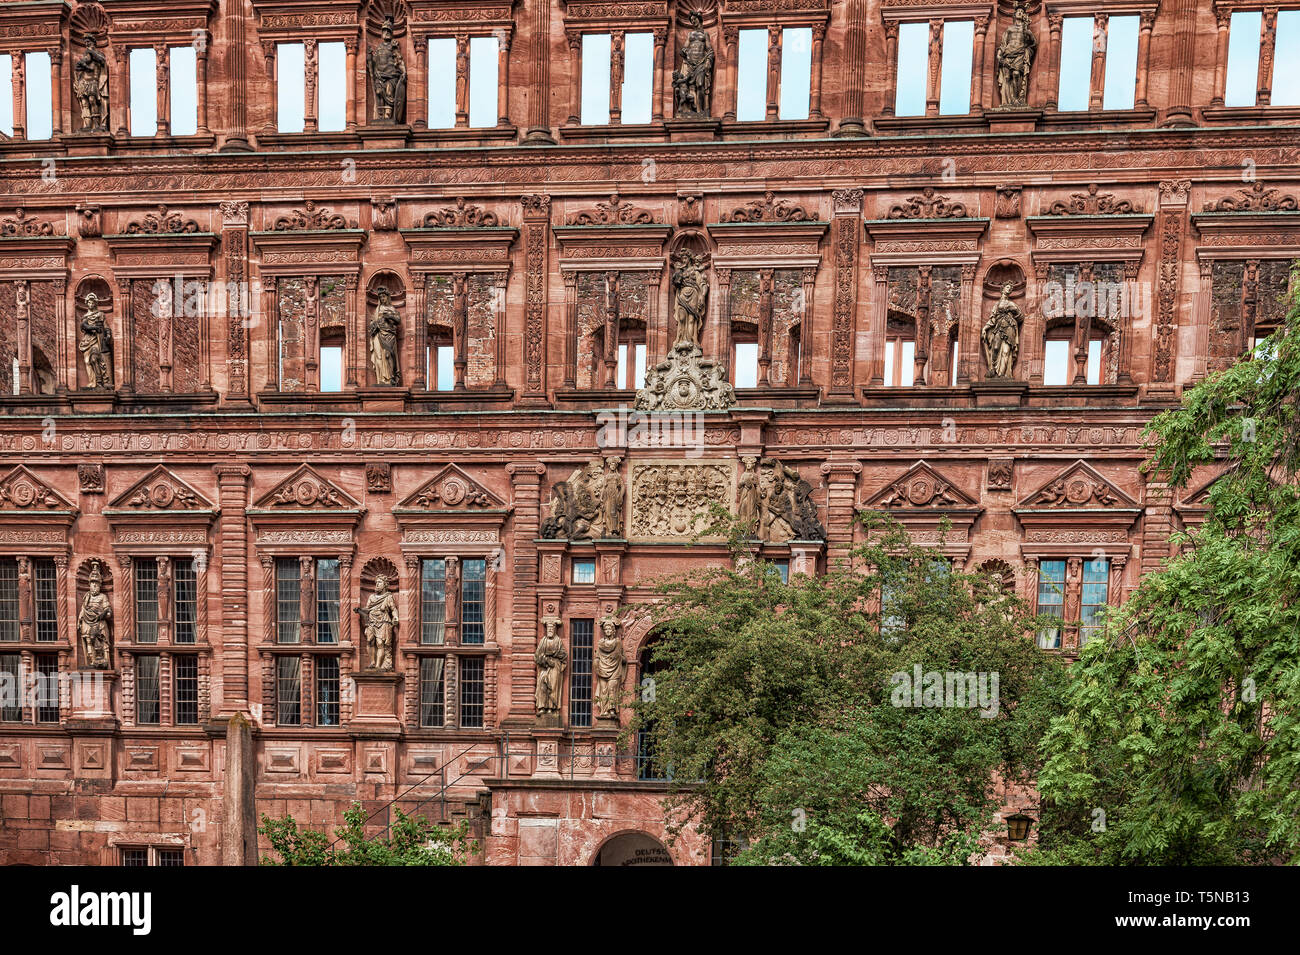 Facade of the Heidelberg castle ruins Stock Photo